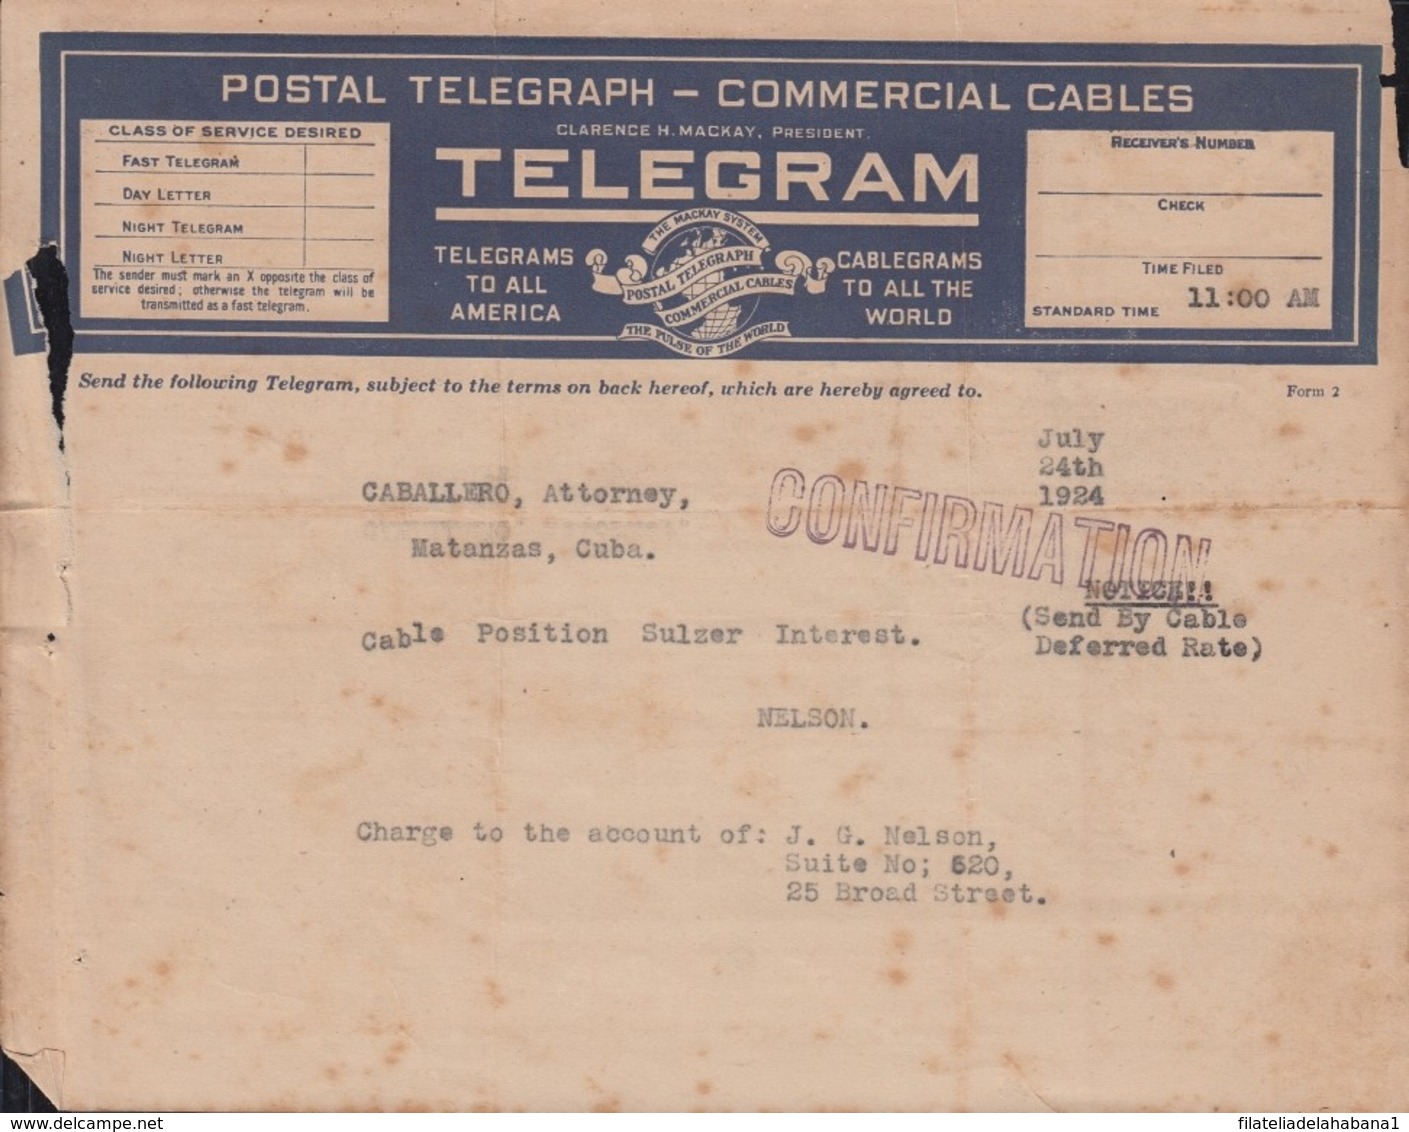 TELEG-274 CUBA (LG1507) REPUBLIC TELEGRAM TELEGRAPH 2 MODELOS DE TELEGRAMA - Telegraph